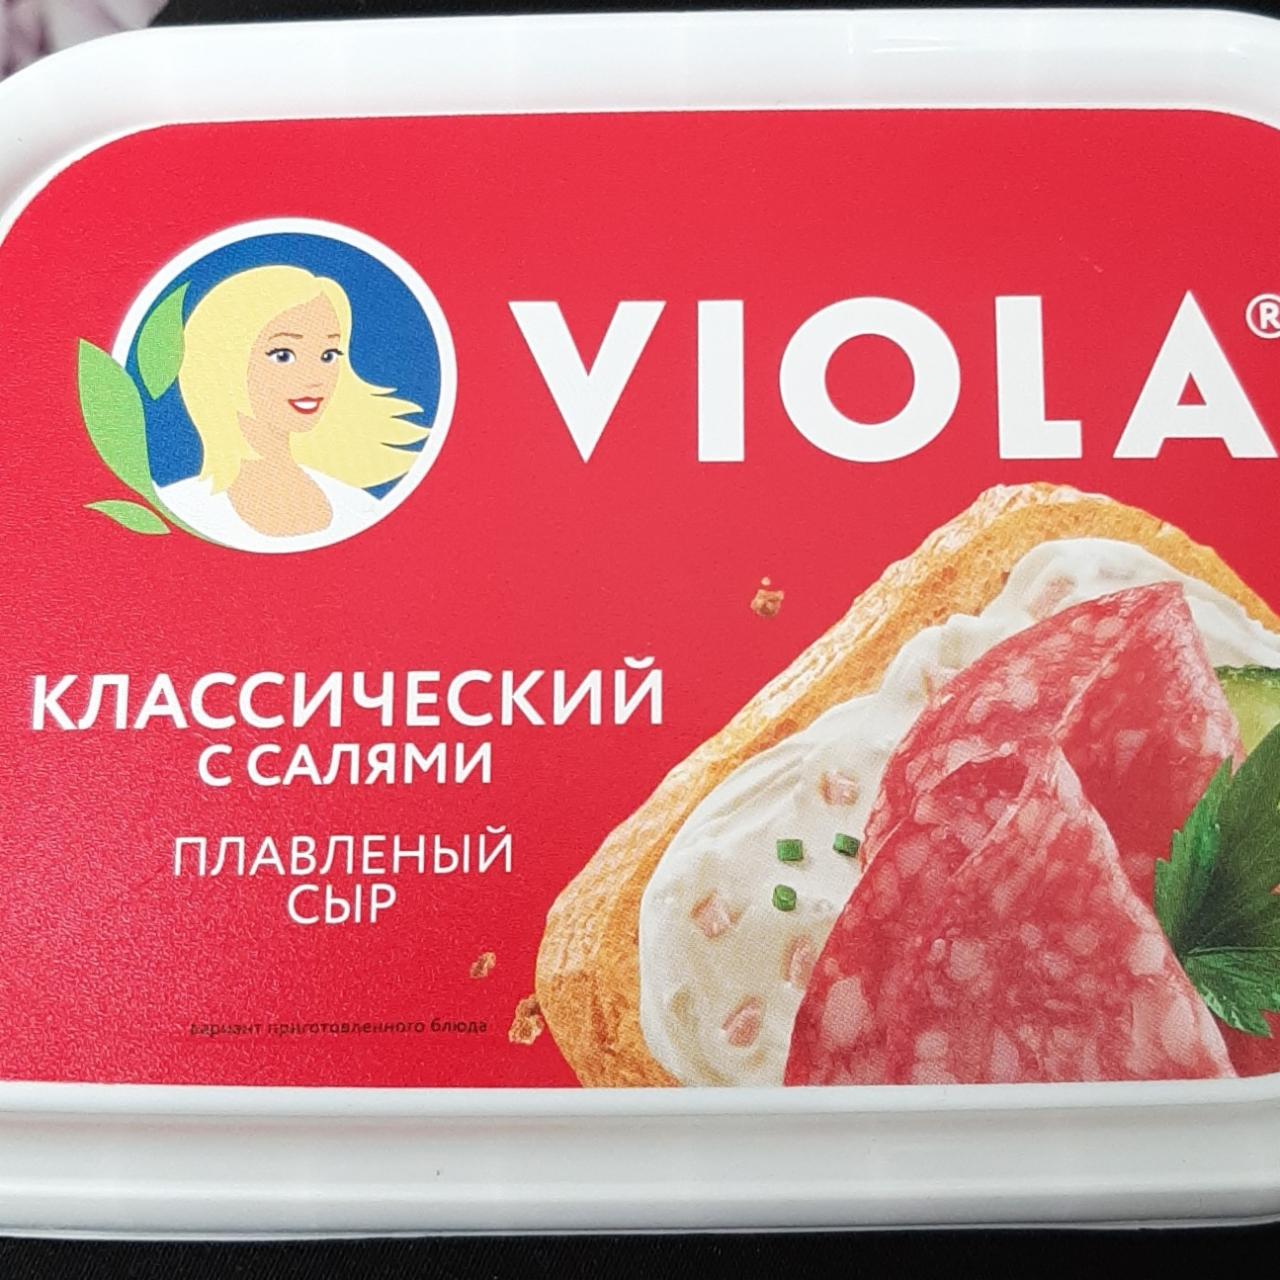 Фото - Сыр плавленый классический с салями Viola